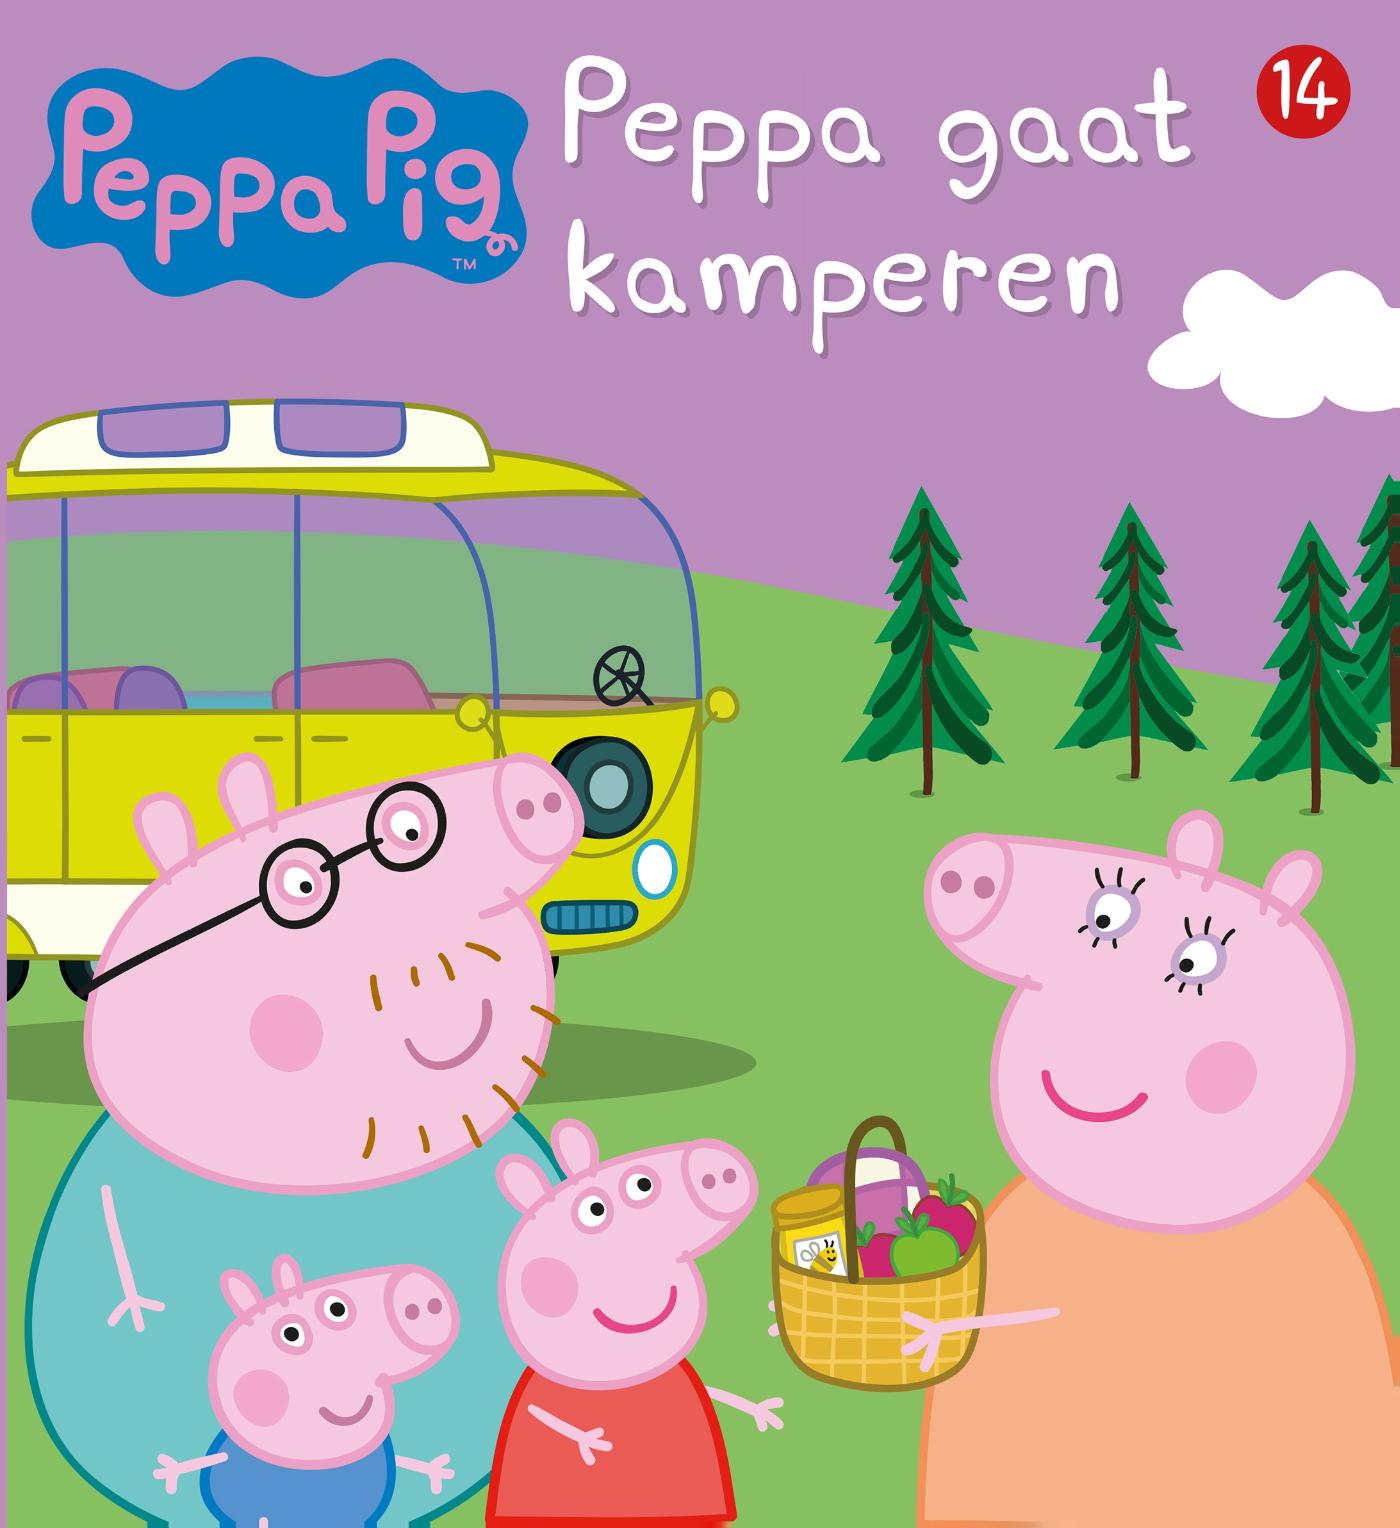 Peppa Pig - Peppa gaat kamperen (nr 14)